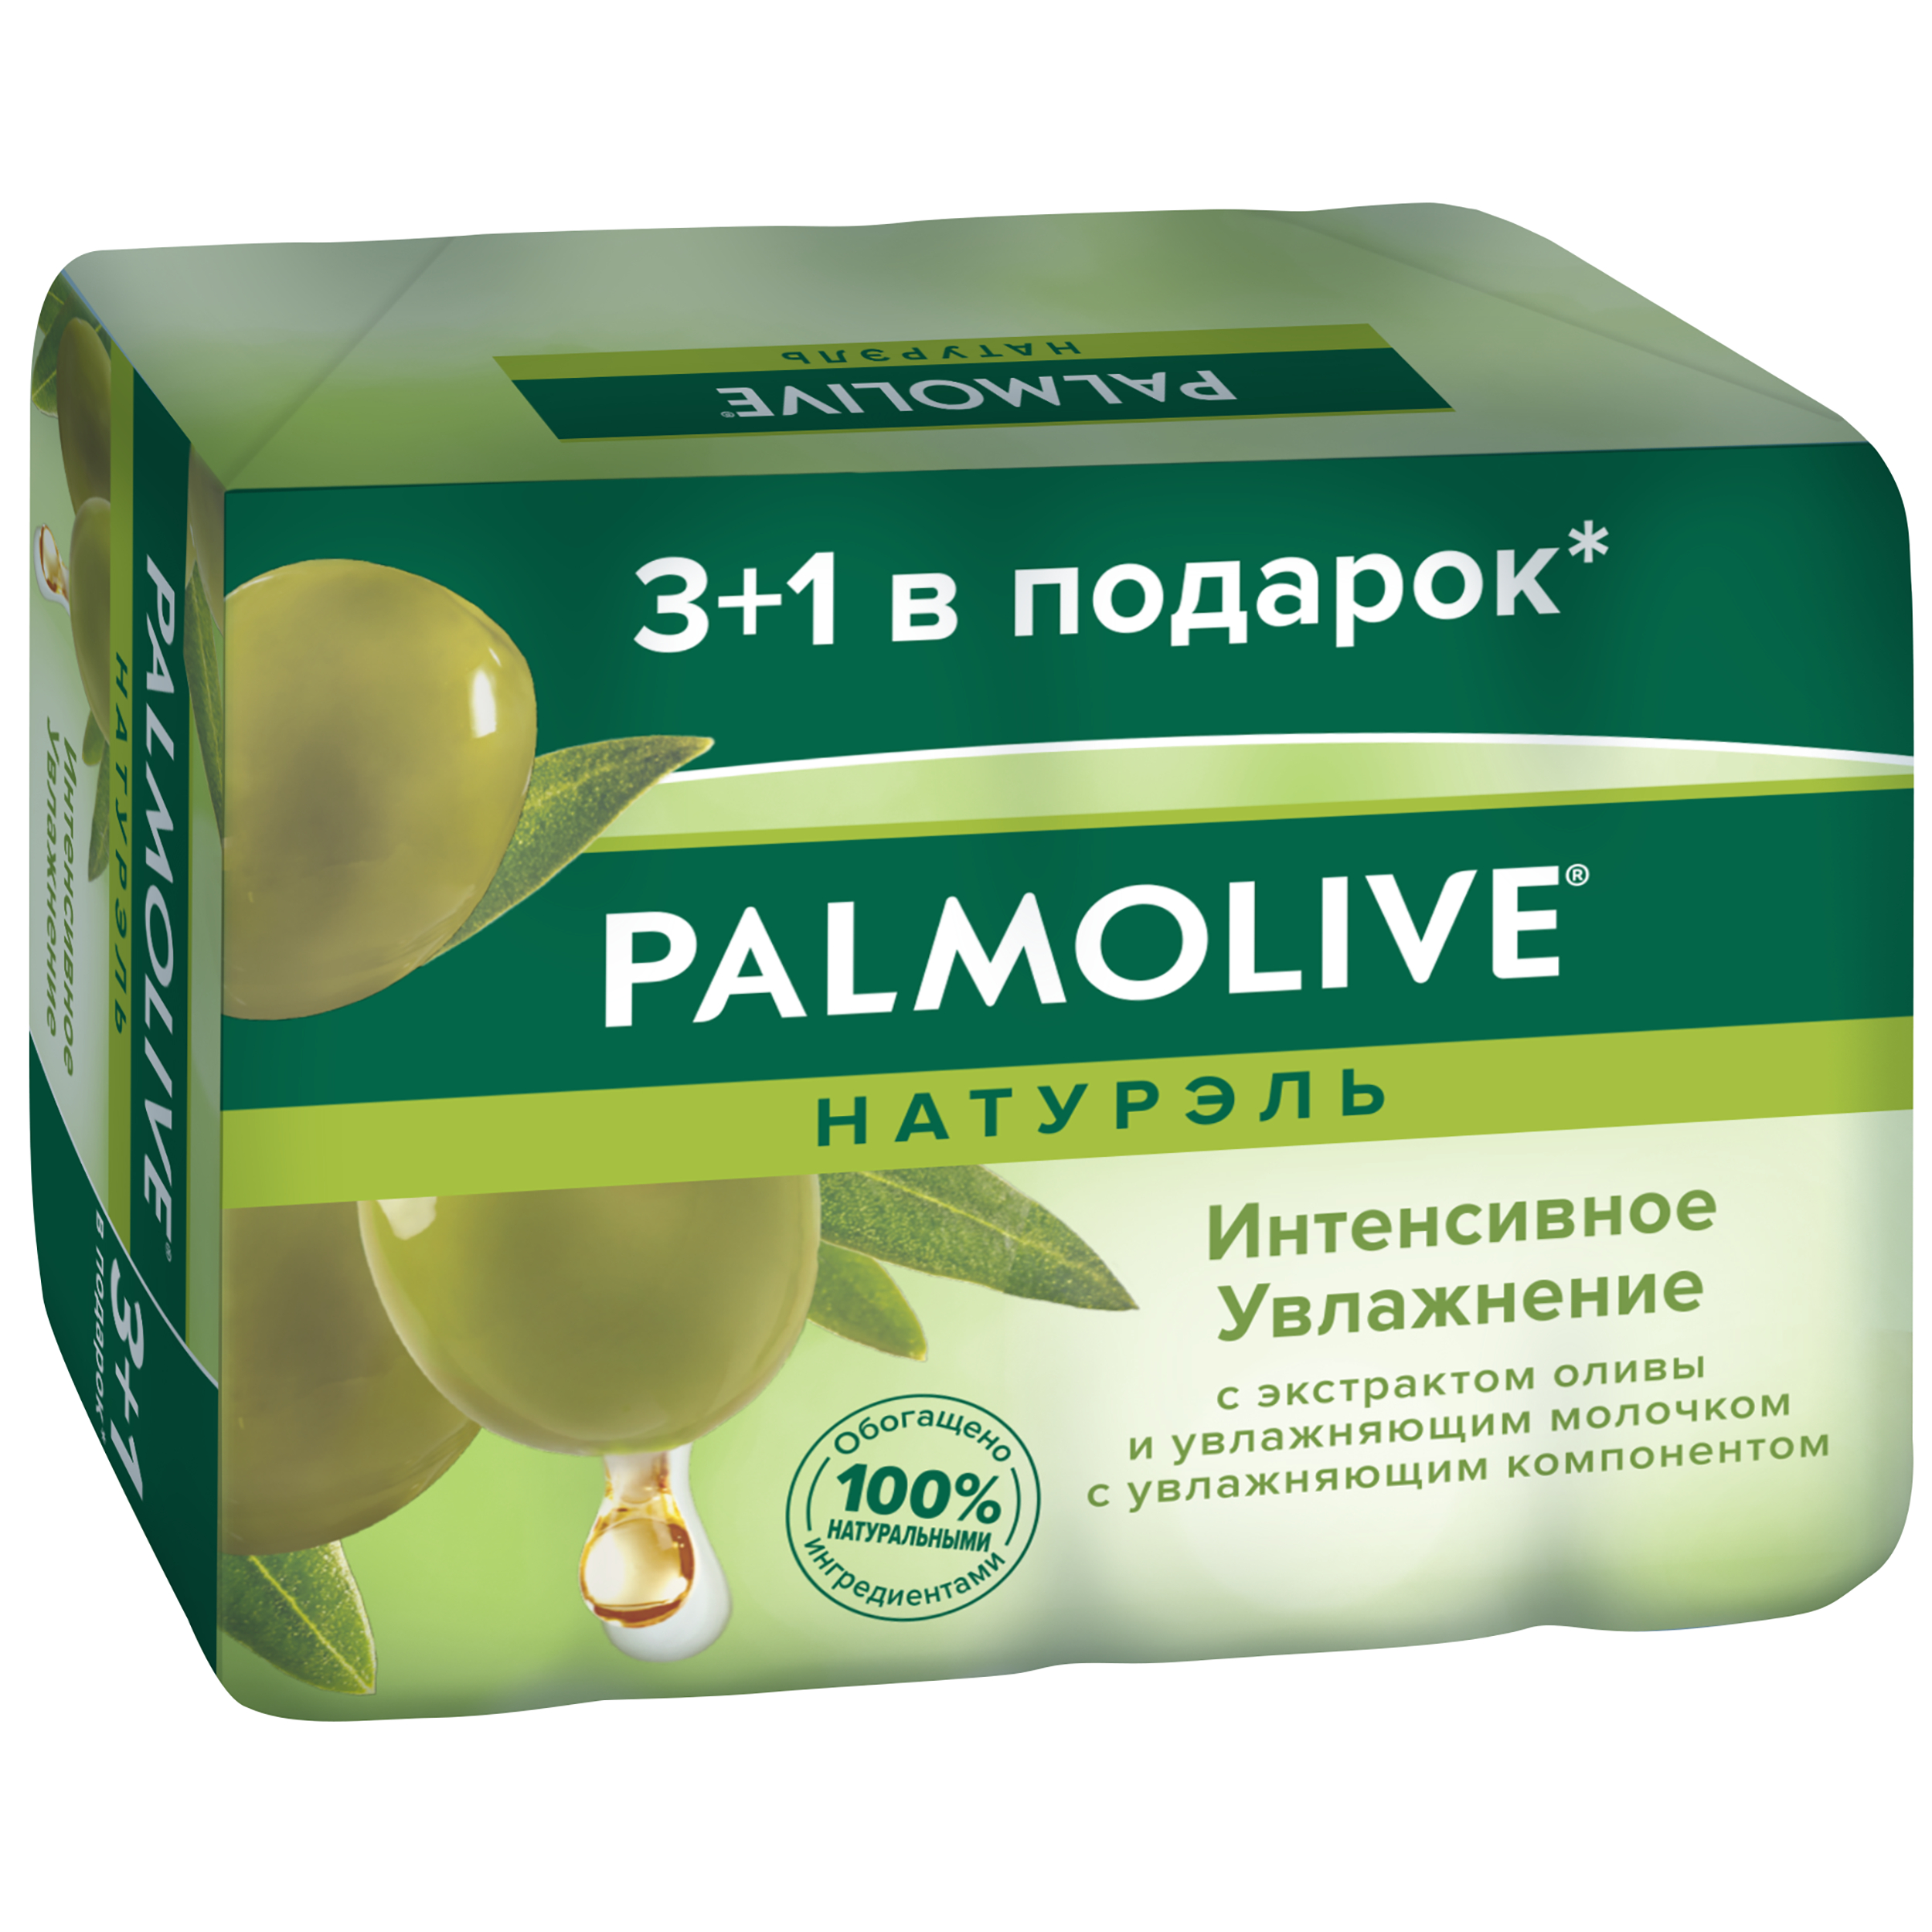 Косметическое мыло Palmolive Натурэль Интенсивное увлажнение с экстрактом оливы 4x90 г косметическое мыло palmolive натурэль интенсивное увлажнение с экстрактом оливы 4x90 г